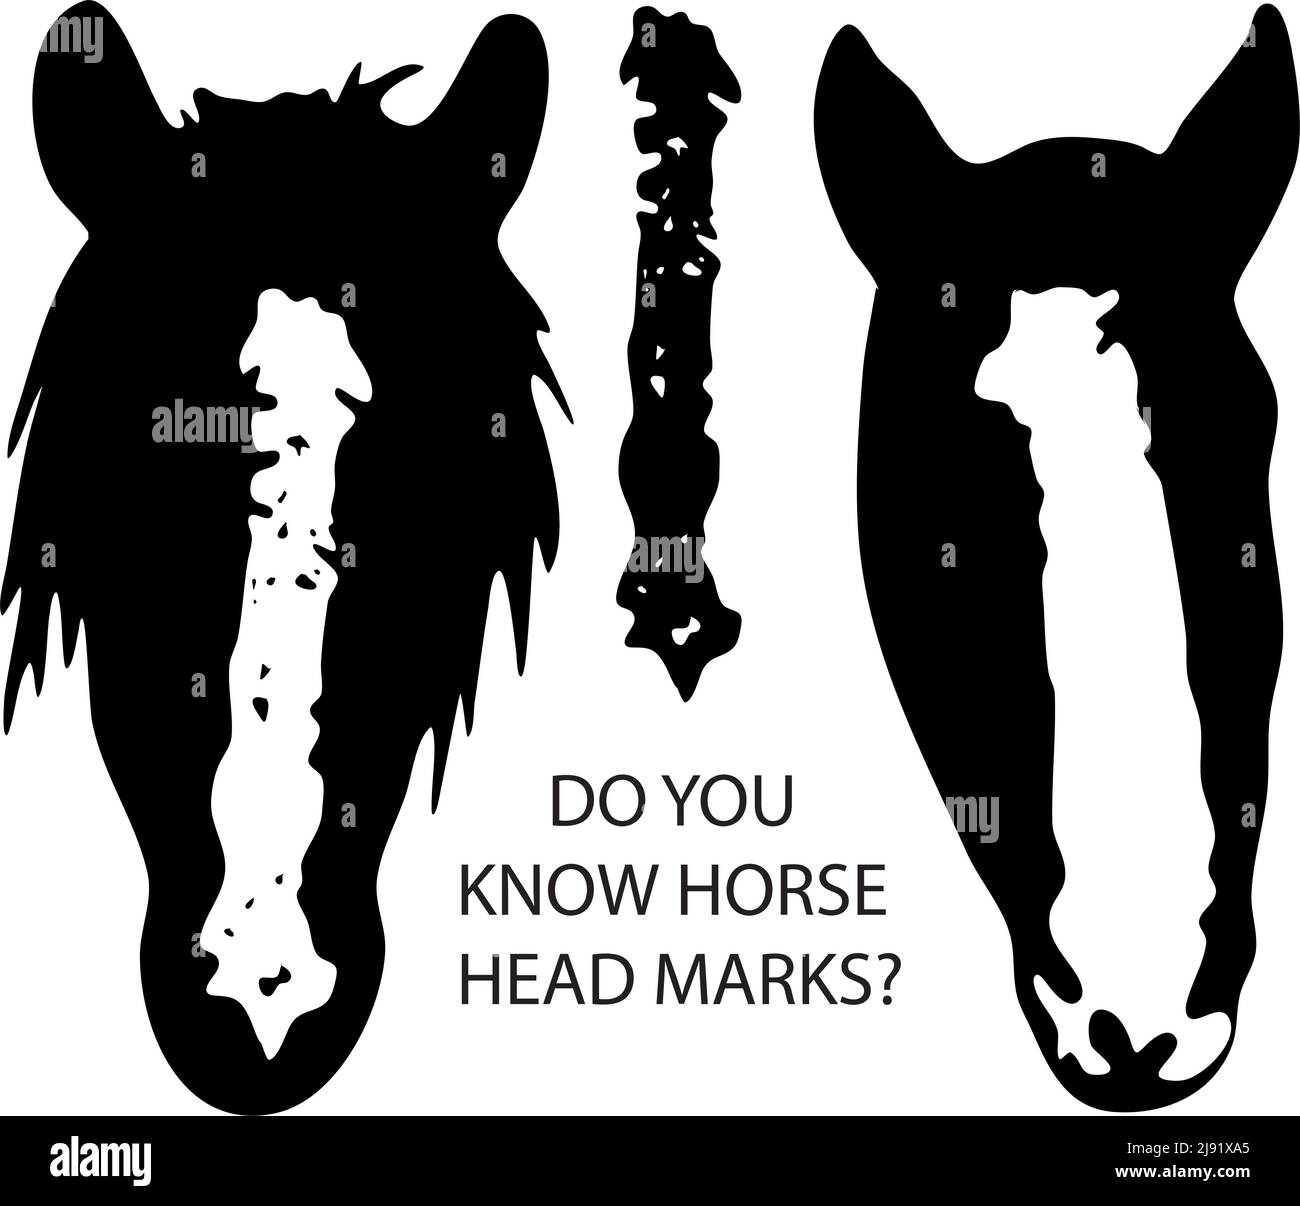 Druckfertiges Vektor-Zeichenset: Pferdegesichtsmarkierungen, schwarz-weiße Kopfflecken, Sterne, Nippel, Streifen, glatzköpfige Gesichts-Markierungskollektion Stock Vektor